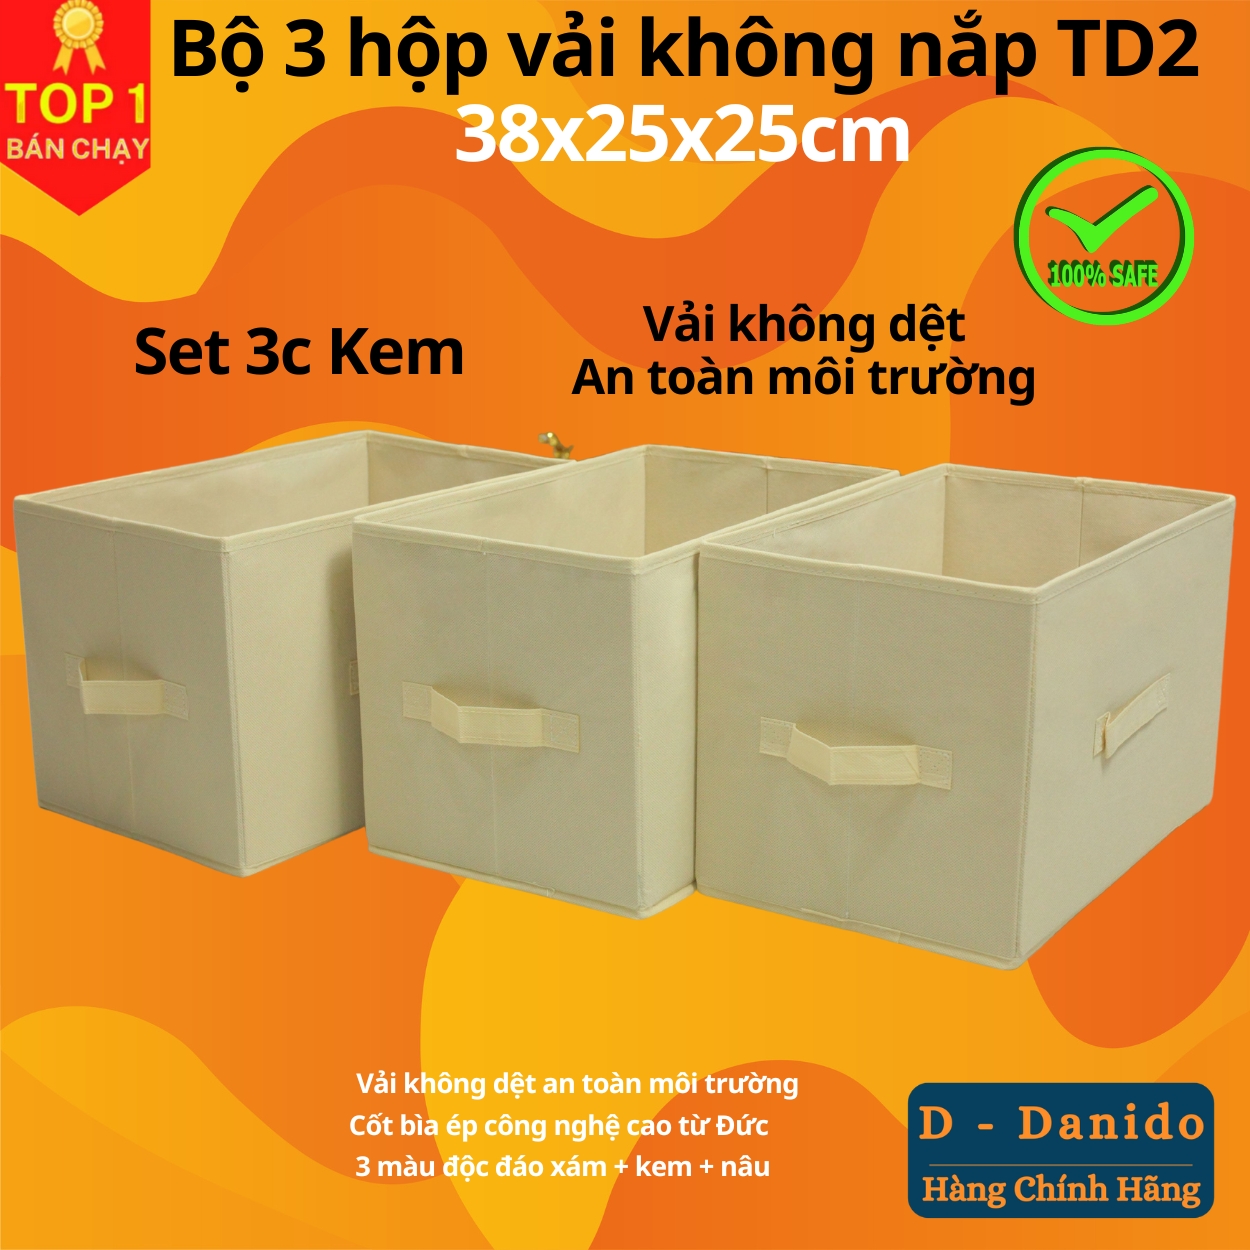 Combo 3 hộp vải đựng đồ đa năng TD2 – Bộ 3 túi vải Thụy Điển không nắp tiết kiệm sang trọng dung tích 24L mỗi hộp - chính hãng miDoctor